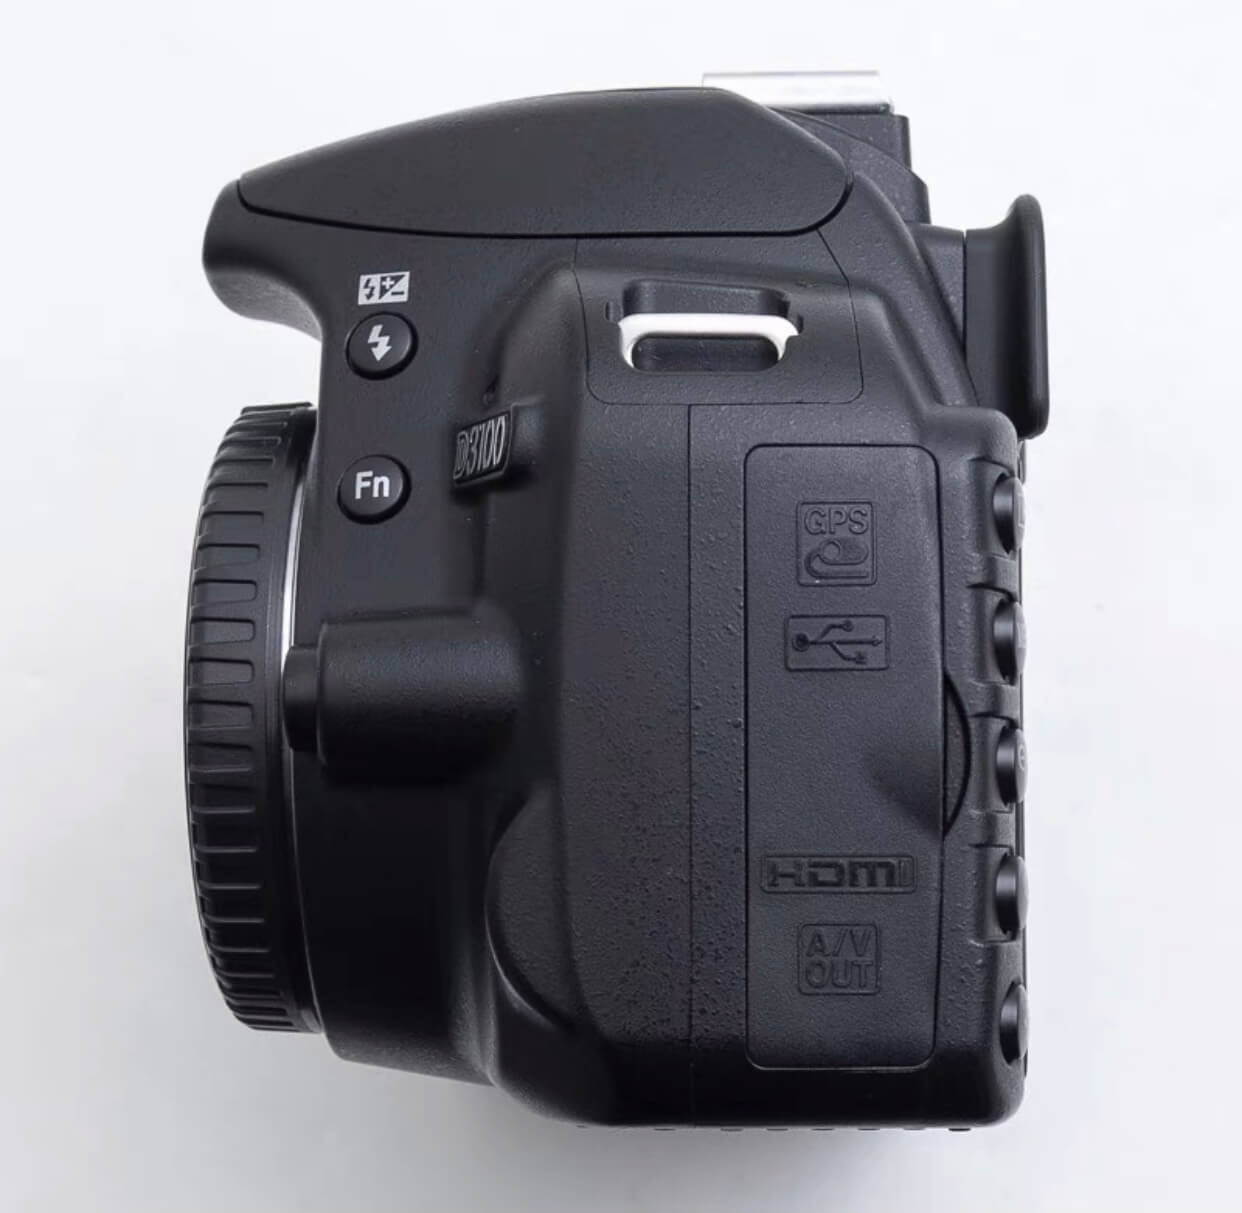 D3100 camera